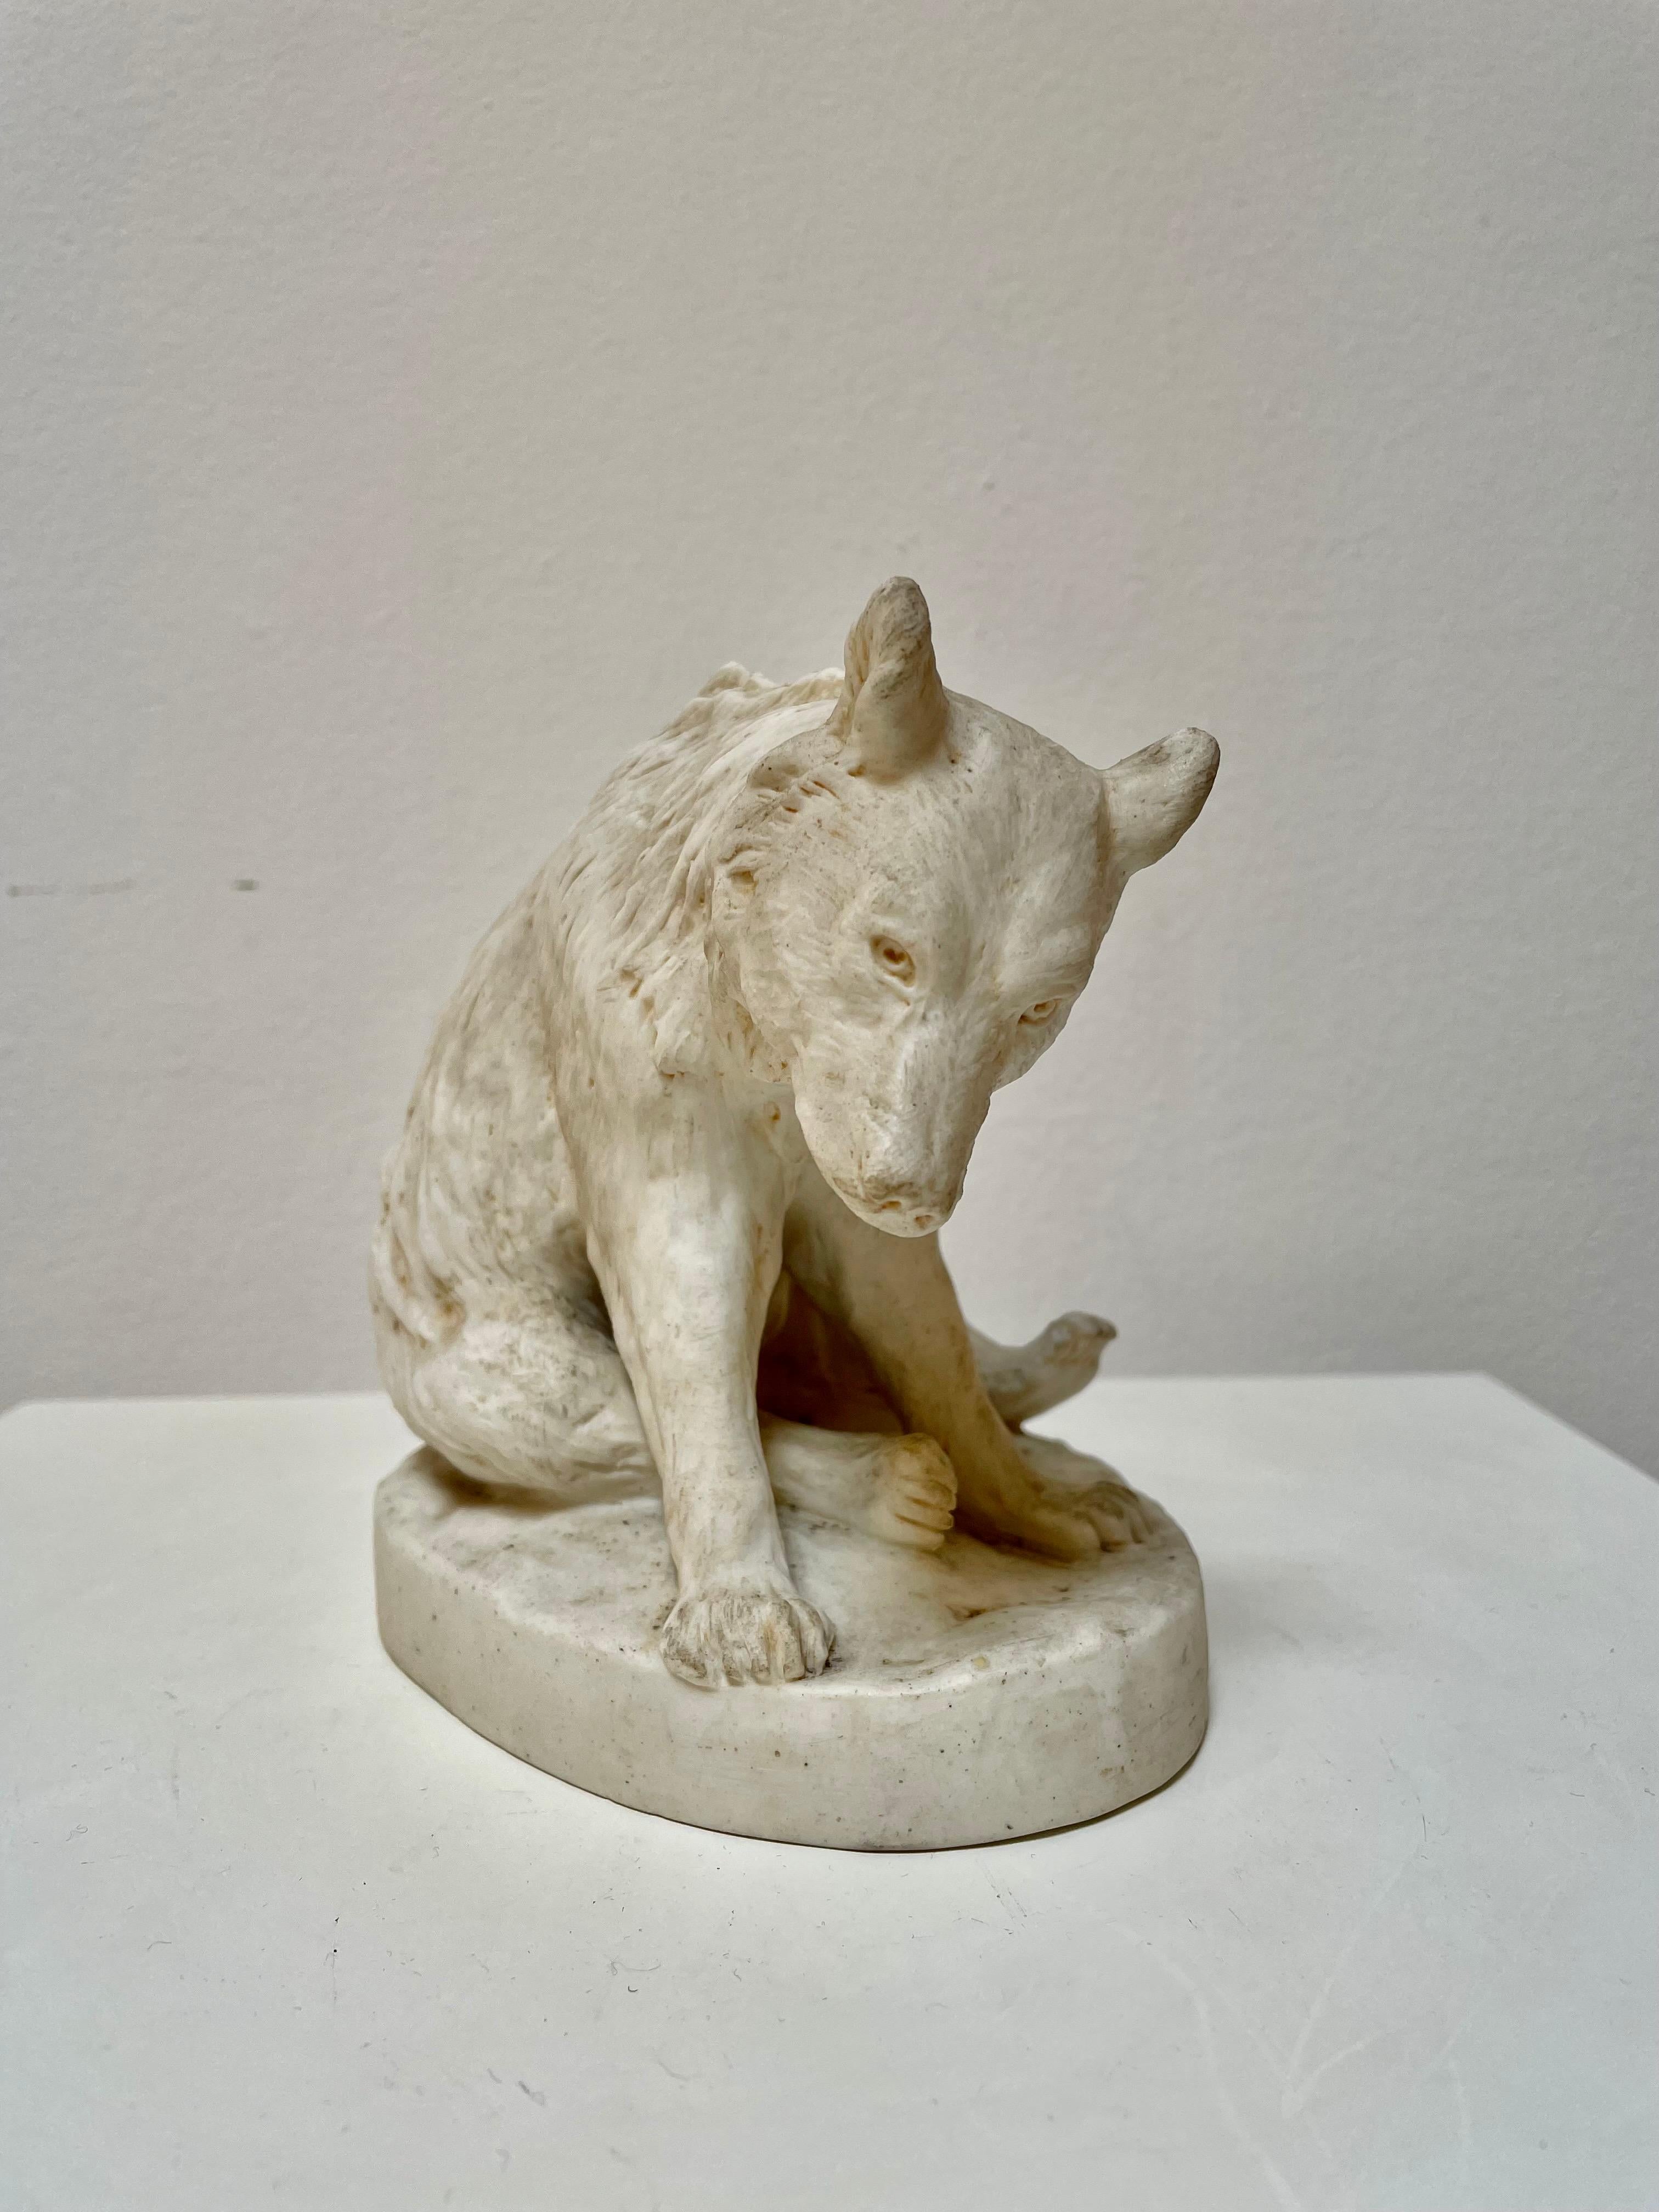 White ceramic bear by Stellmacher Teplitz, 19th century
Ceramic biscuit.
 